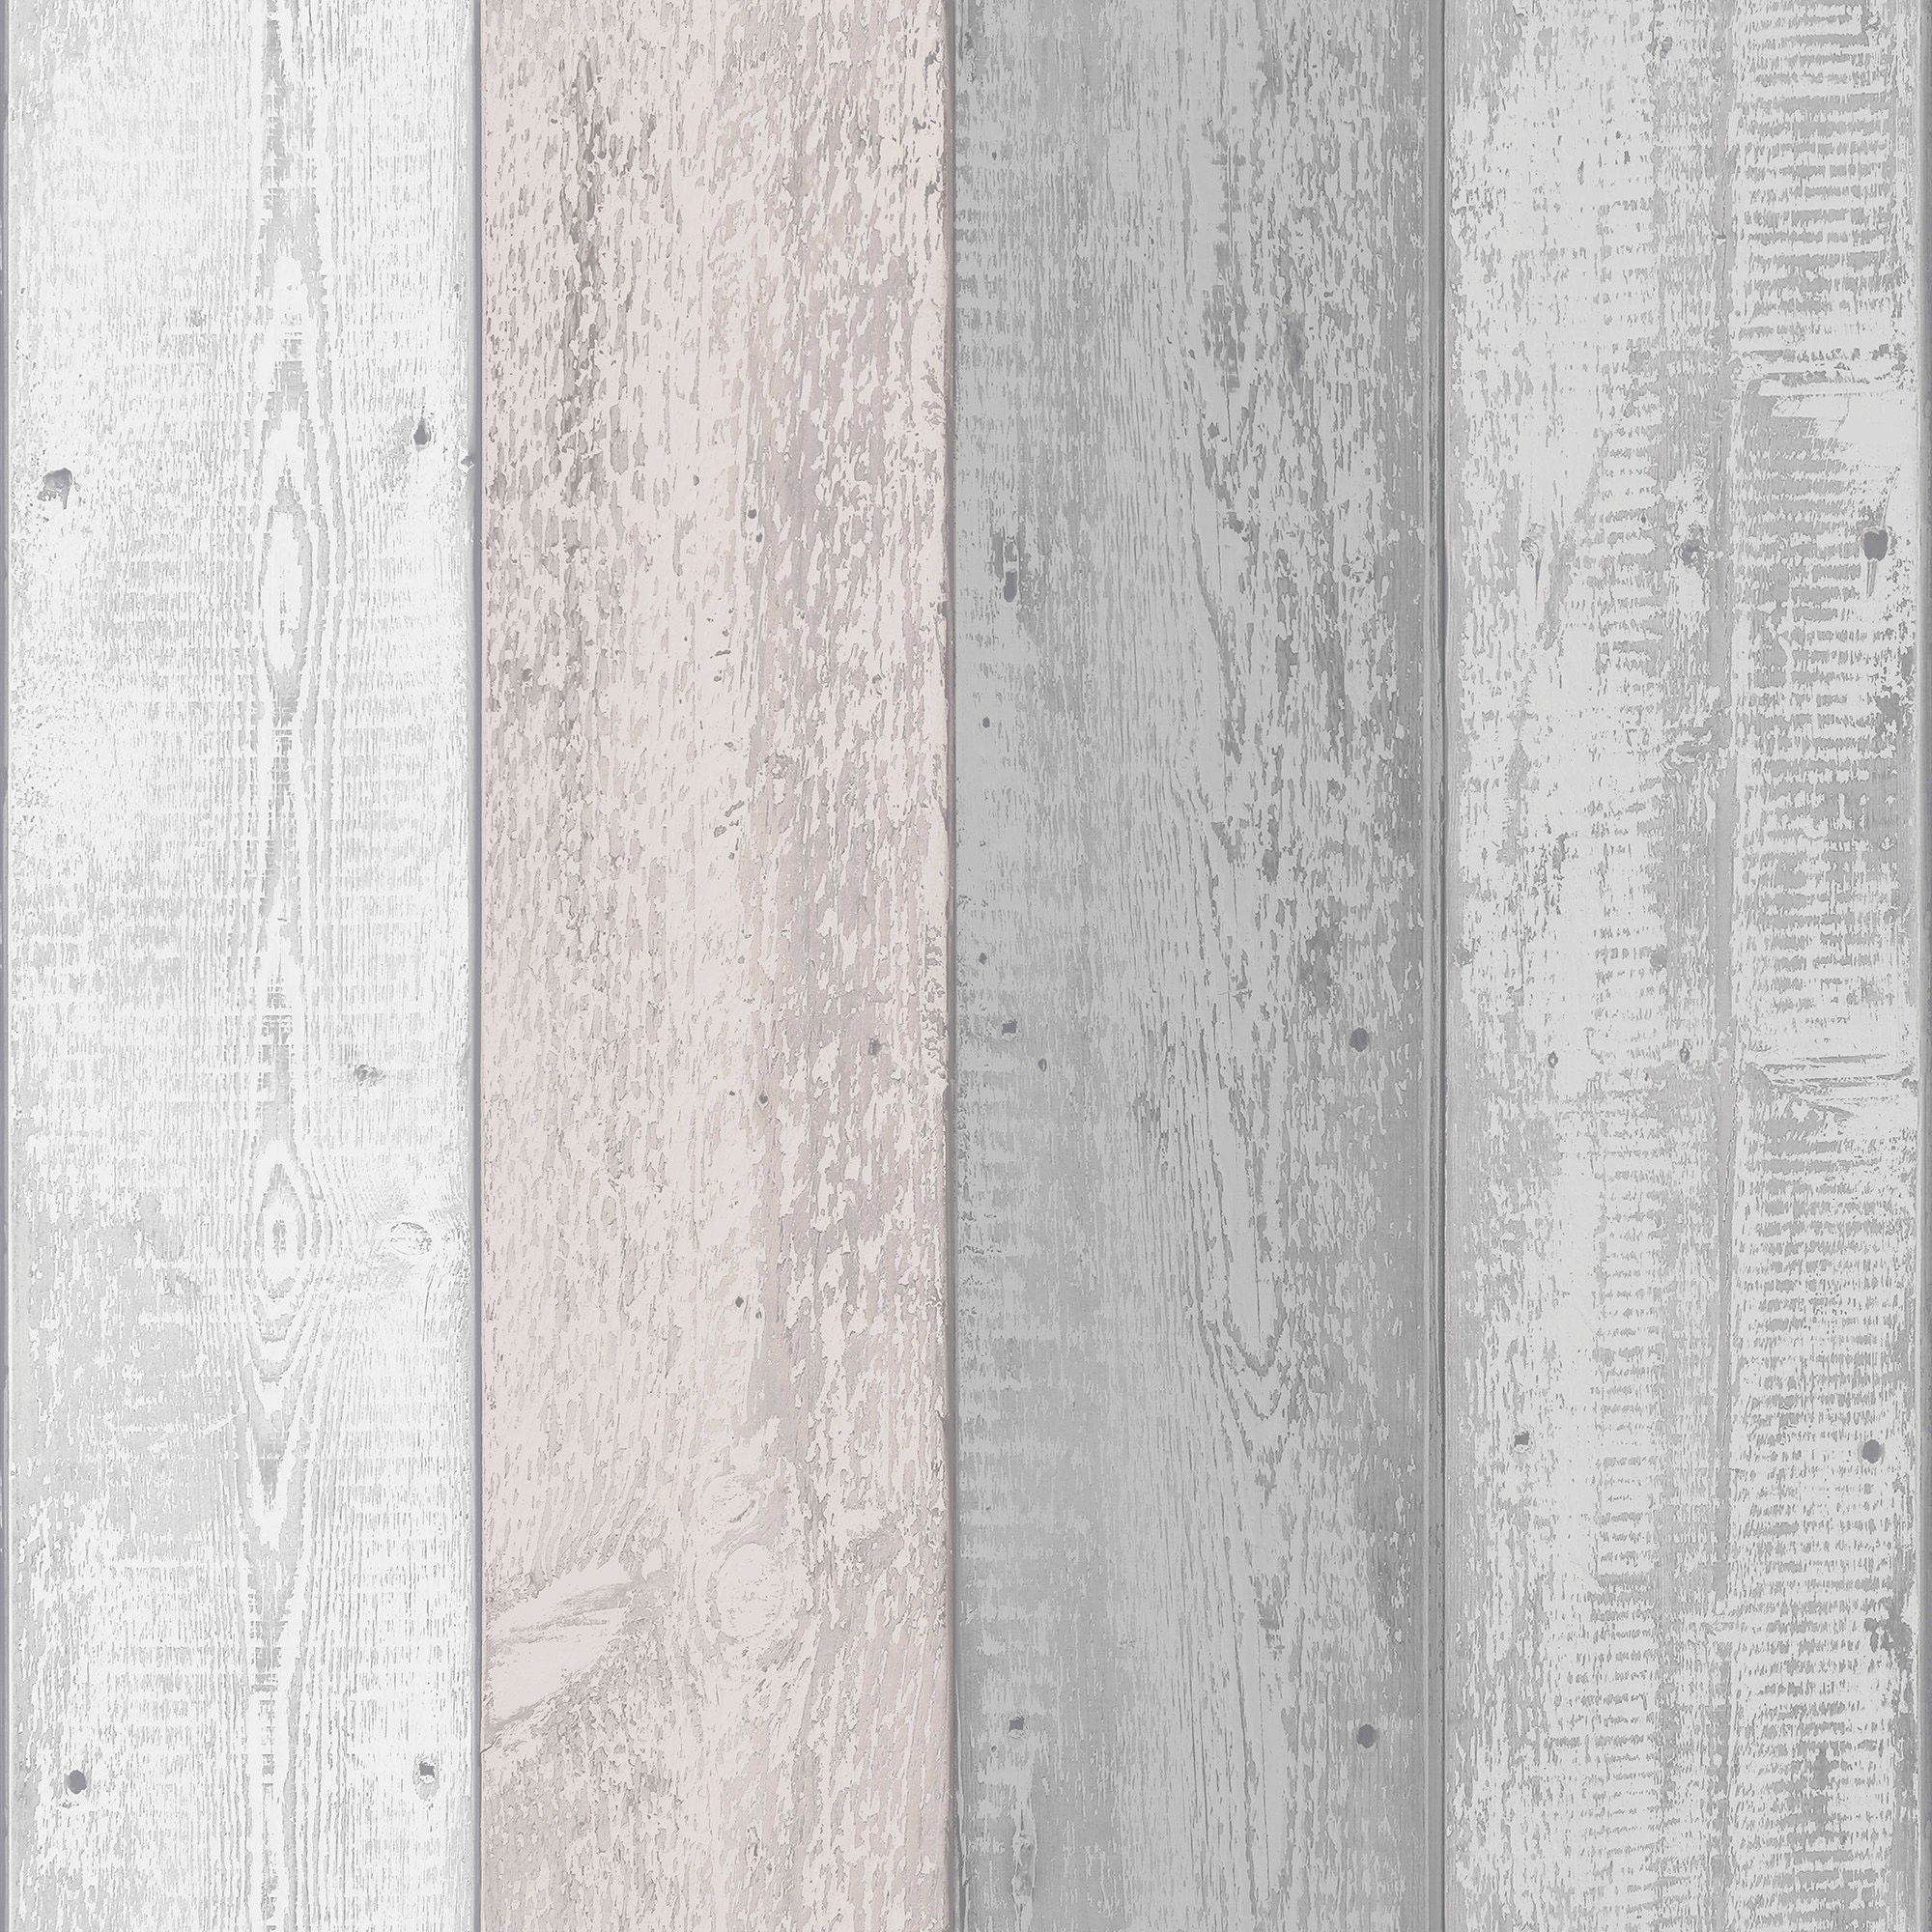 Arthouse Painted Wood Pink/Grey Wallpaper sẽ làm cho nhà bạn trở nên độc đáo và cá tính hơn bao giờ hết. Bộ sưu tập giấy dán tường mô phỏng gỗ sơn chất lượng cao sẽ mang đến cho không gian sống của bạn một vẻ đẹp khác biệt và độc đáo. Hãy xem hình ảnh để khám phá sự độc đáo của nó.